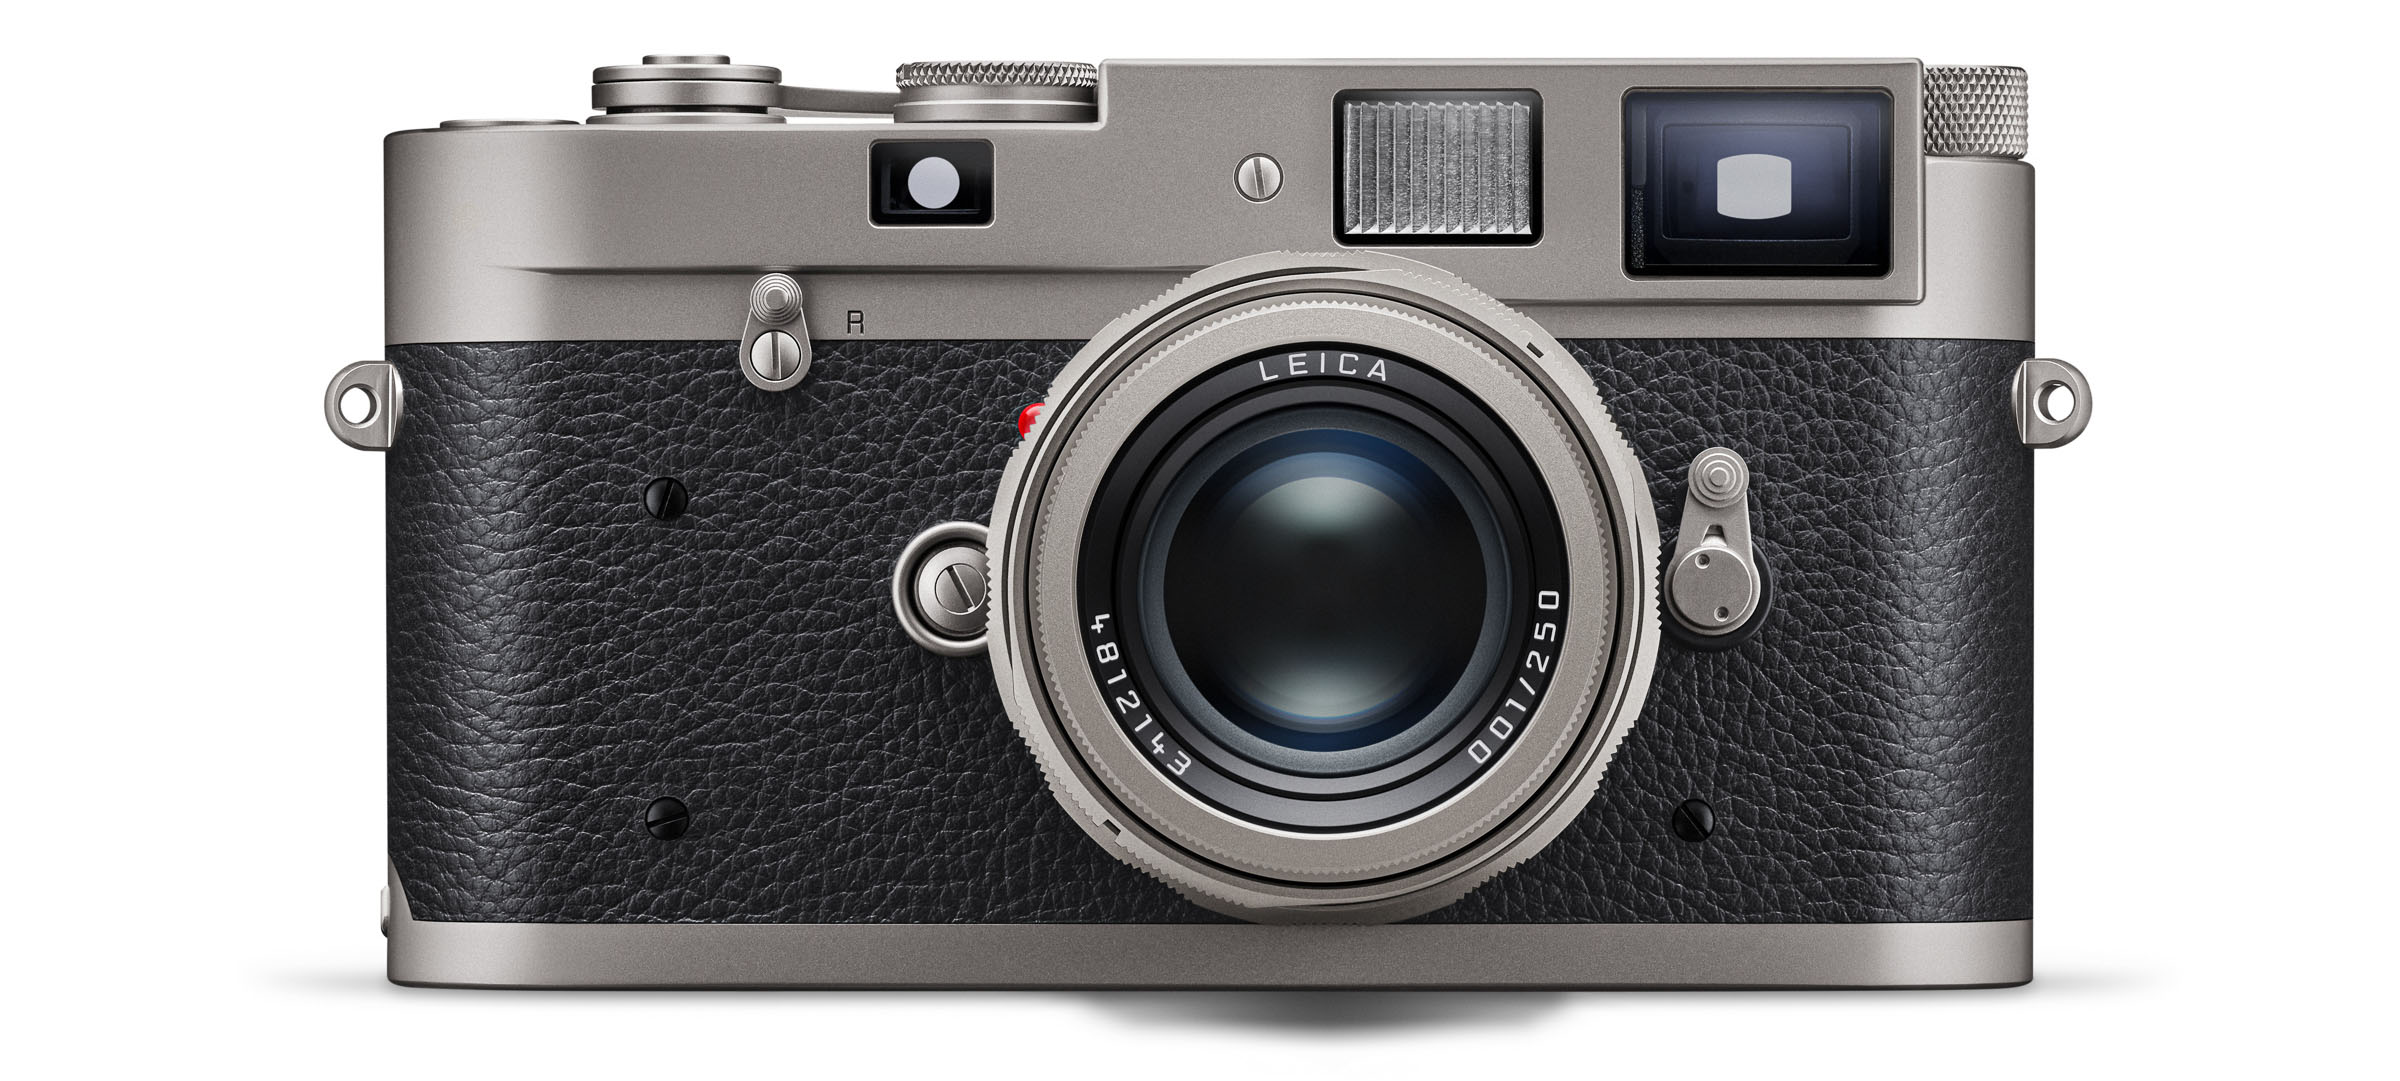 Leica ra mắt máy ảnh film thuần thủ công M-A "Titan" bán giới hạn chỉ 250 chiếc nhưng hết sạch chỉ trong vài tiếng